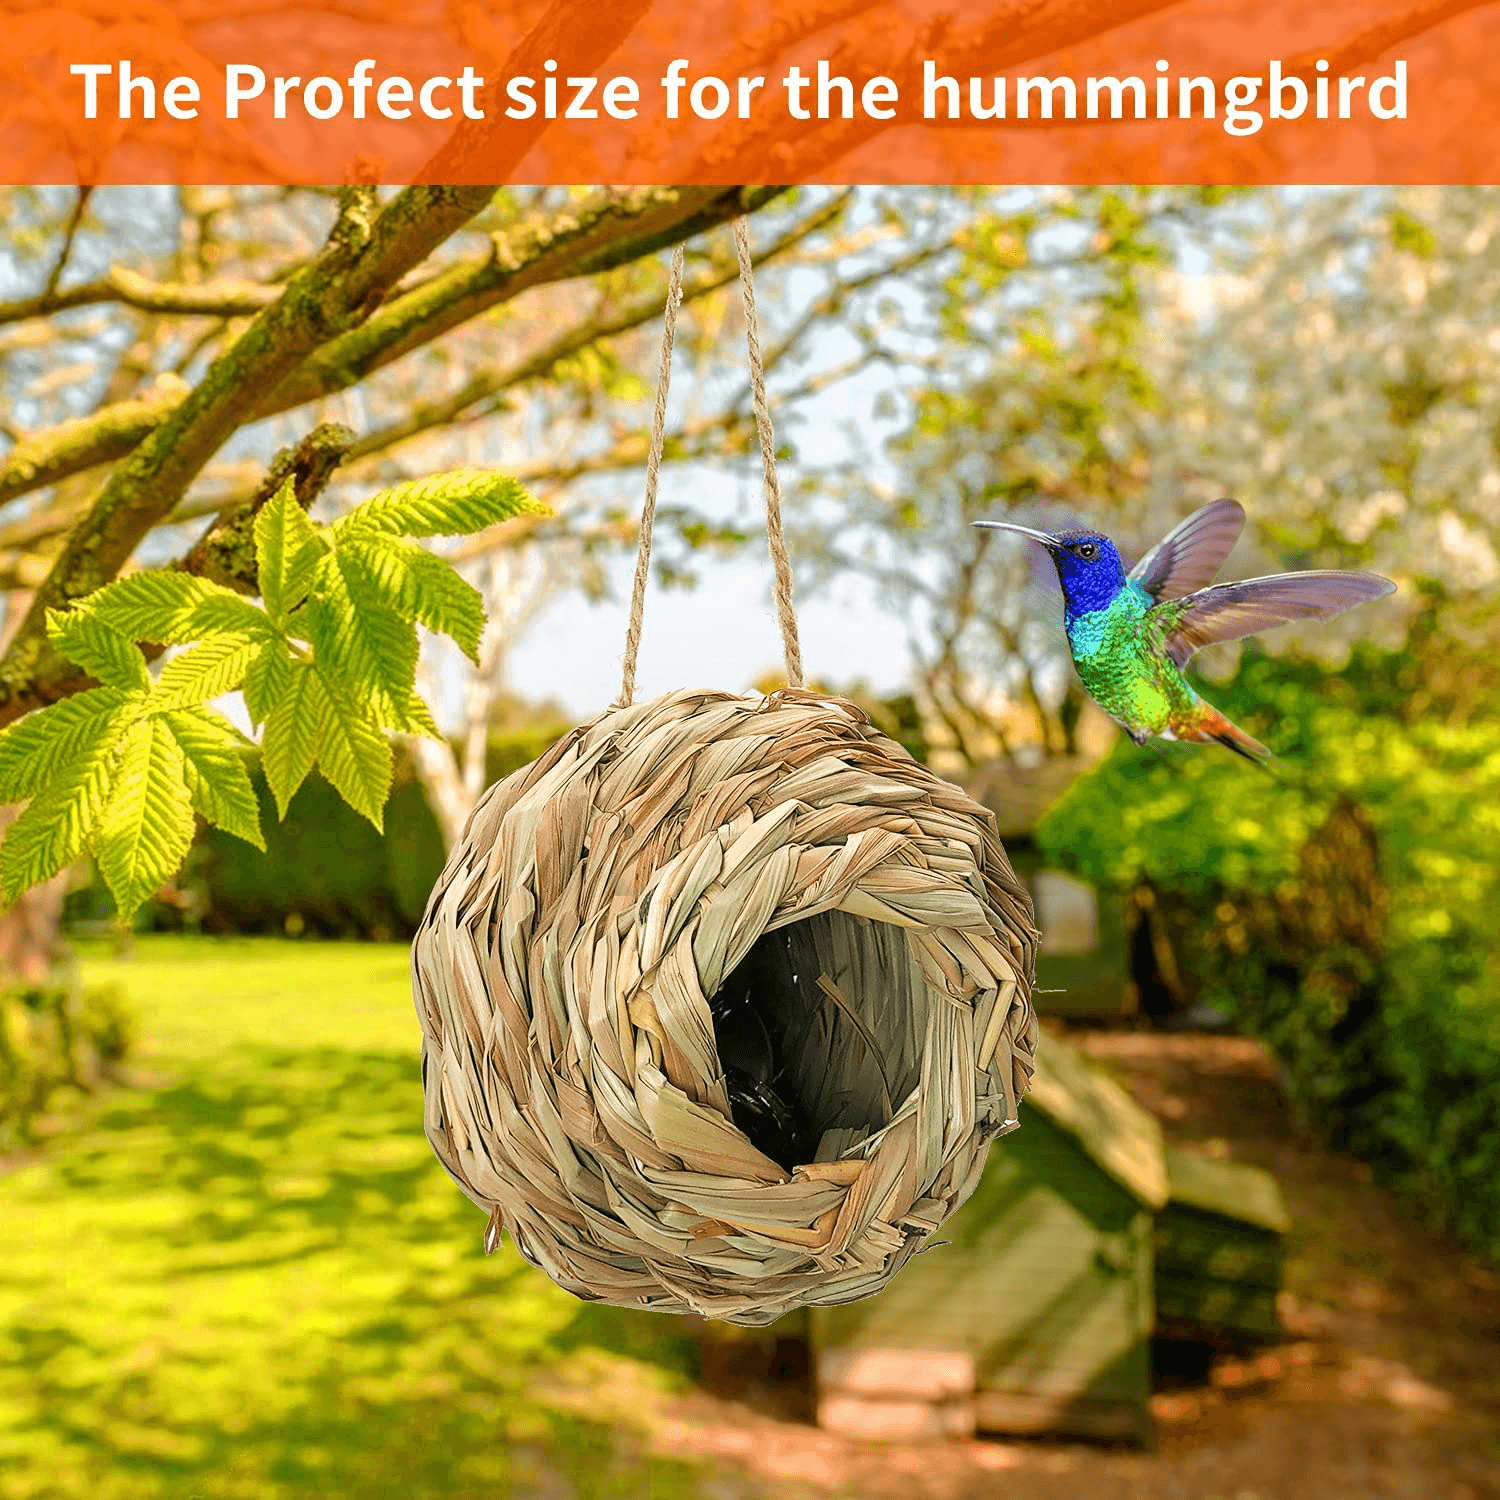 Handmade Hanging Bird House - Natural Grass Fiber Finch Nest Hut